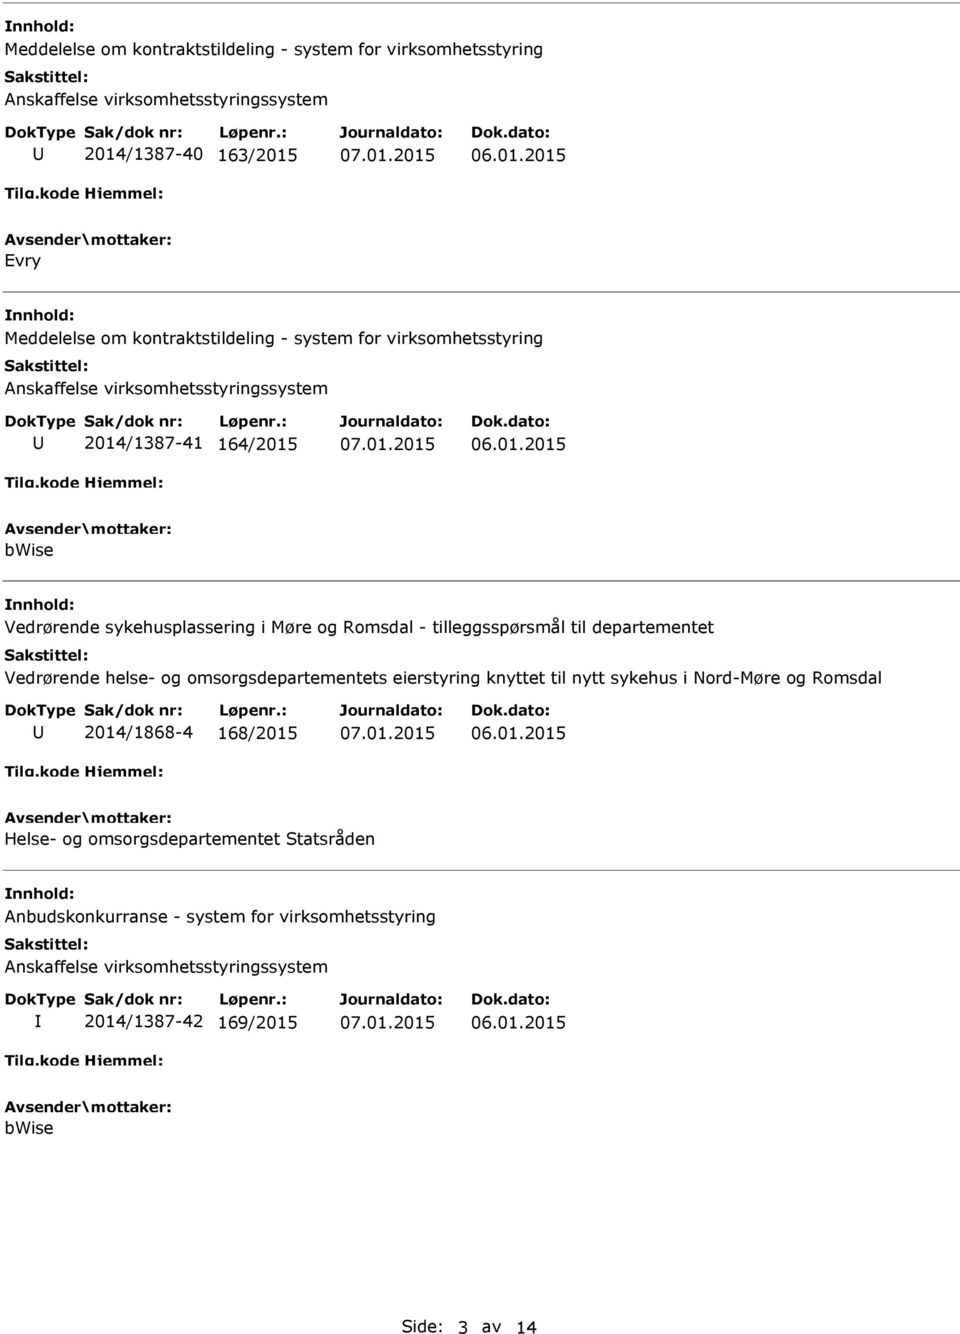 Romsdal - tilleggsspørsmål til departementet Vedrørende helse- og omsorgsdepartementets eierstyring knyttet til nytt sykehus i Nord-Møre og Romsdal 2014/1868-4